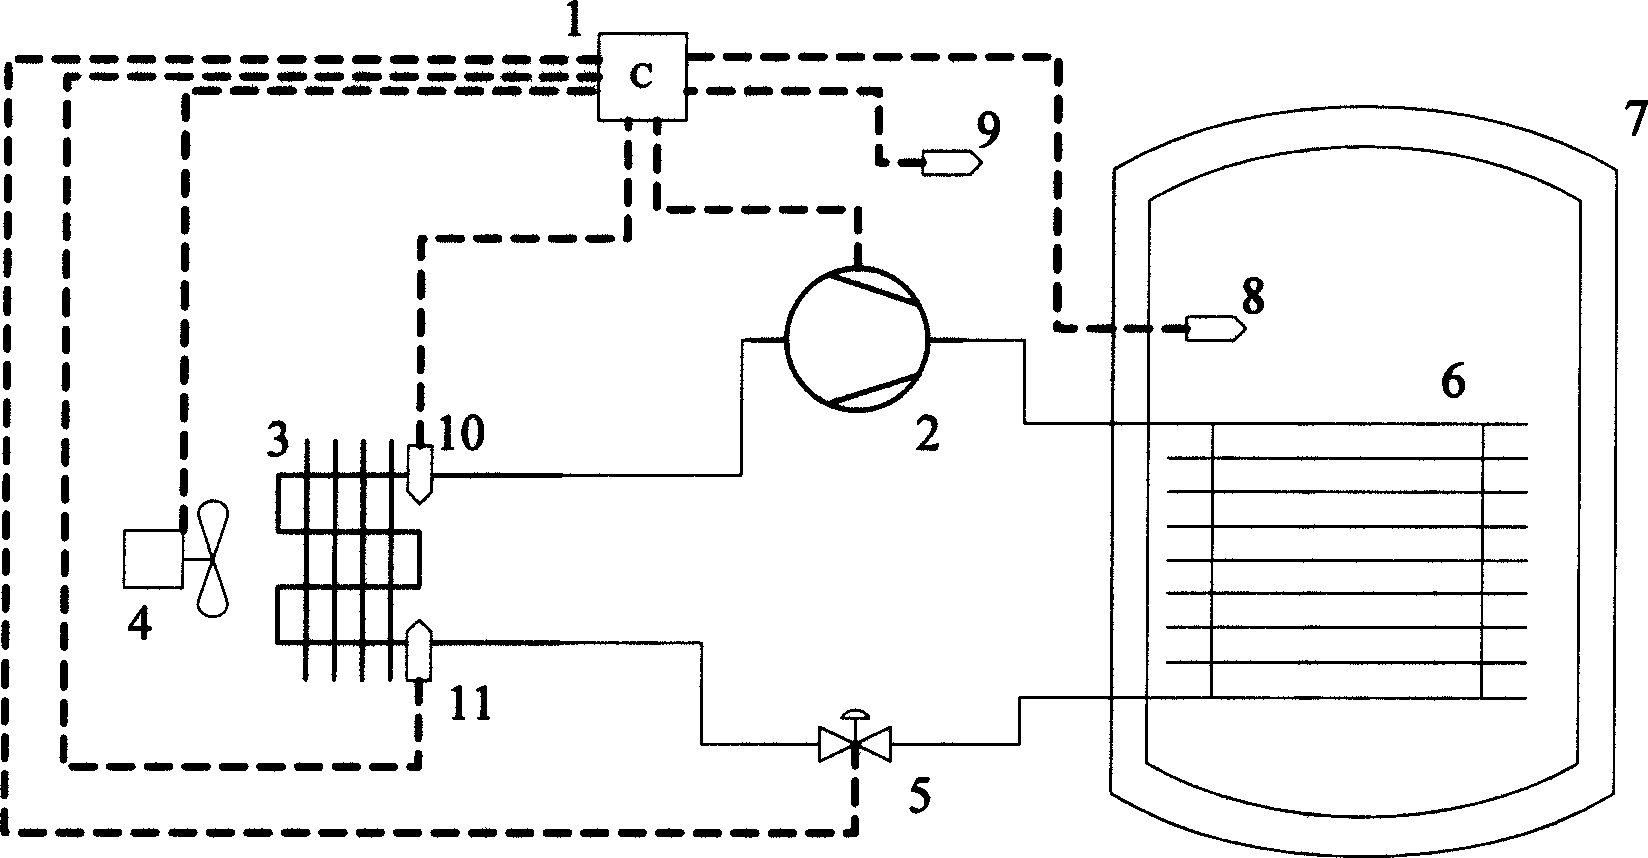 Intelligent type heat pump water heater